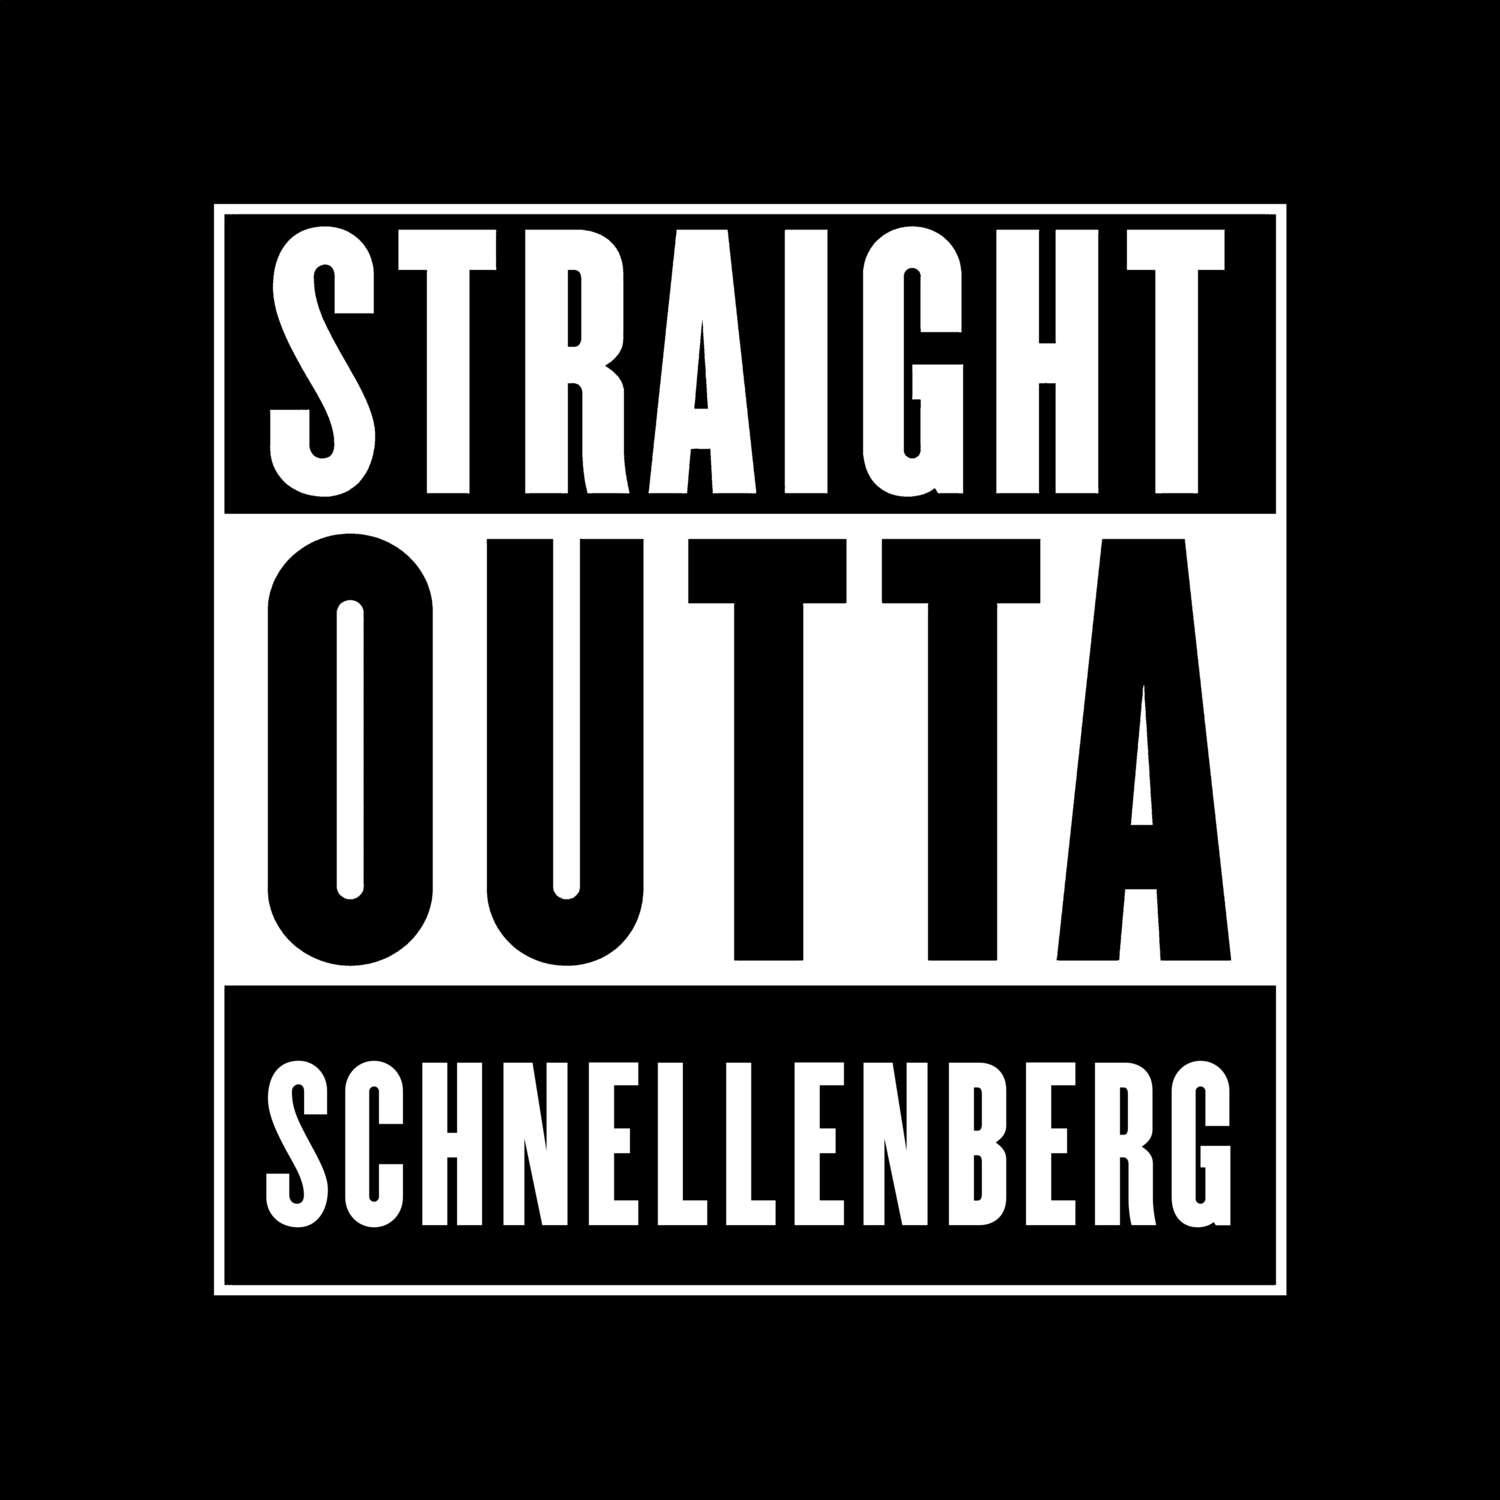 Schnellenberg T-Shirt »Straight Outta«